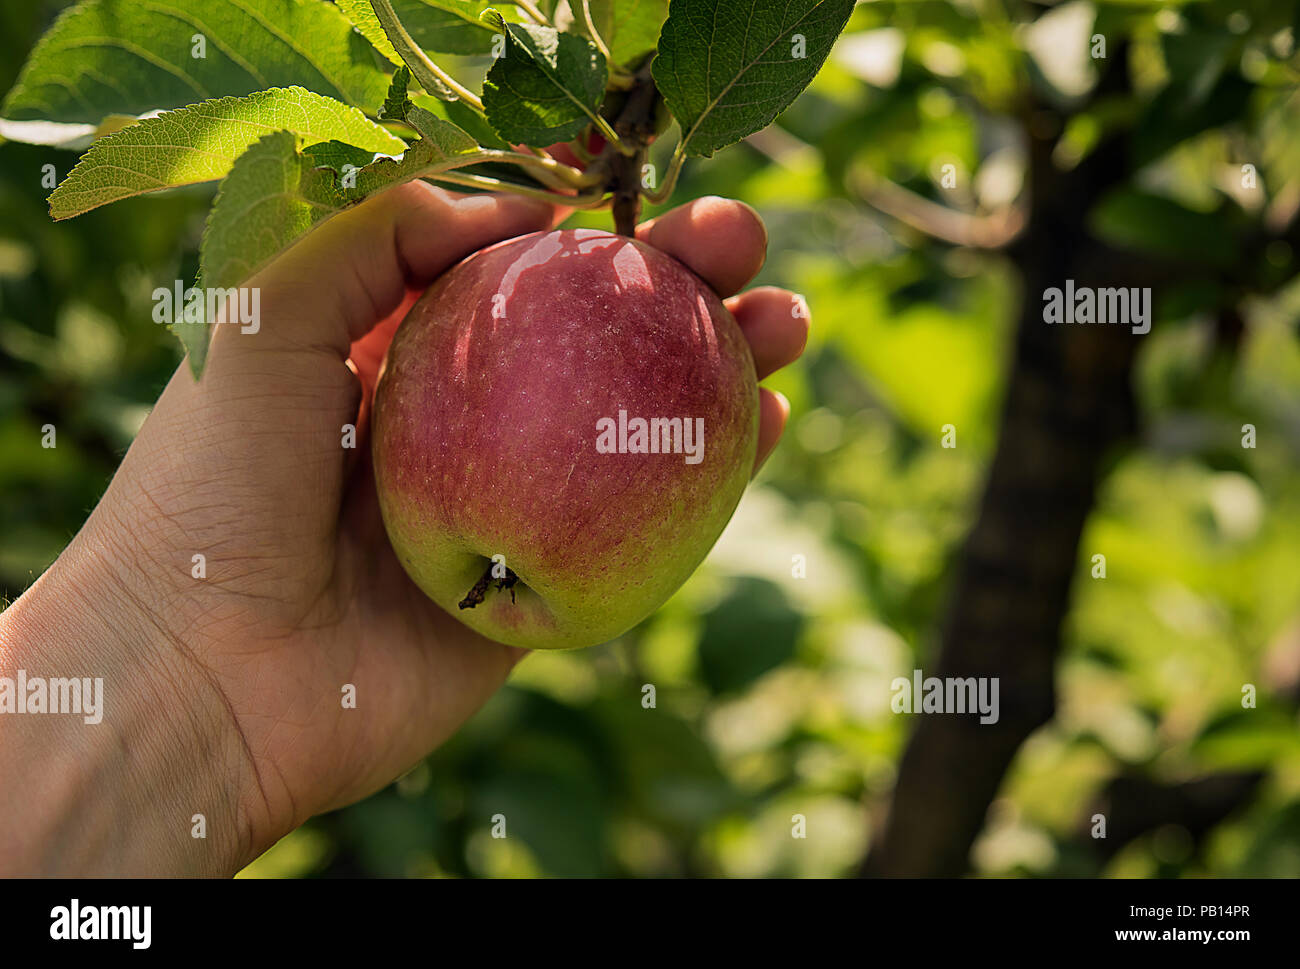 Fruits rouges et jaunes avec des feuilles d'apple sur du vrai arbre branche de l'orchard garden. Woman's hand holding apple est juste avant de le ramasser. Temps de récolte et il Banque D'Images